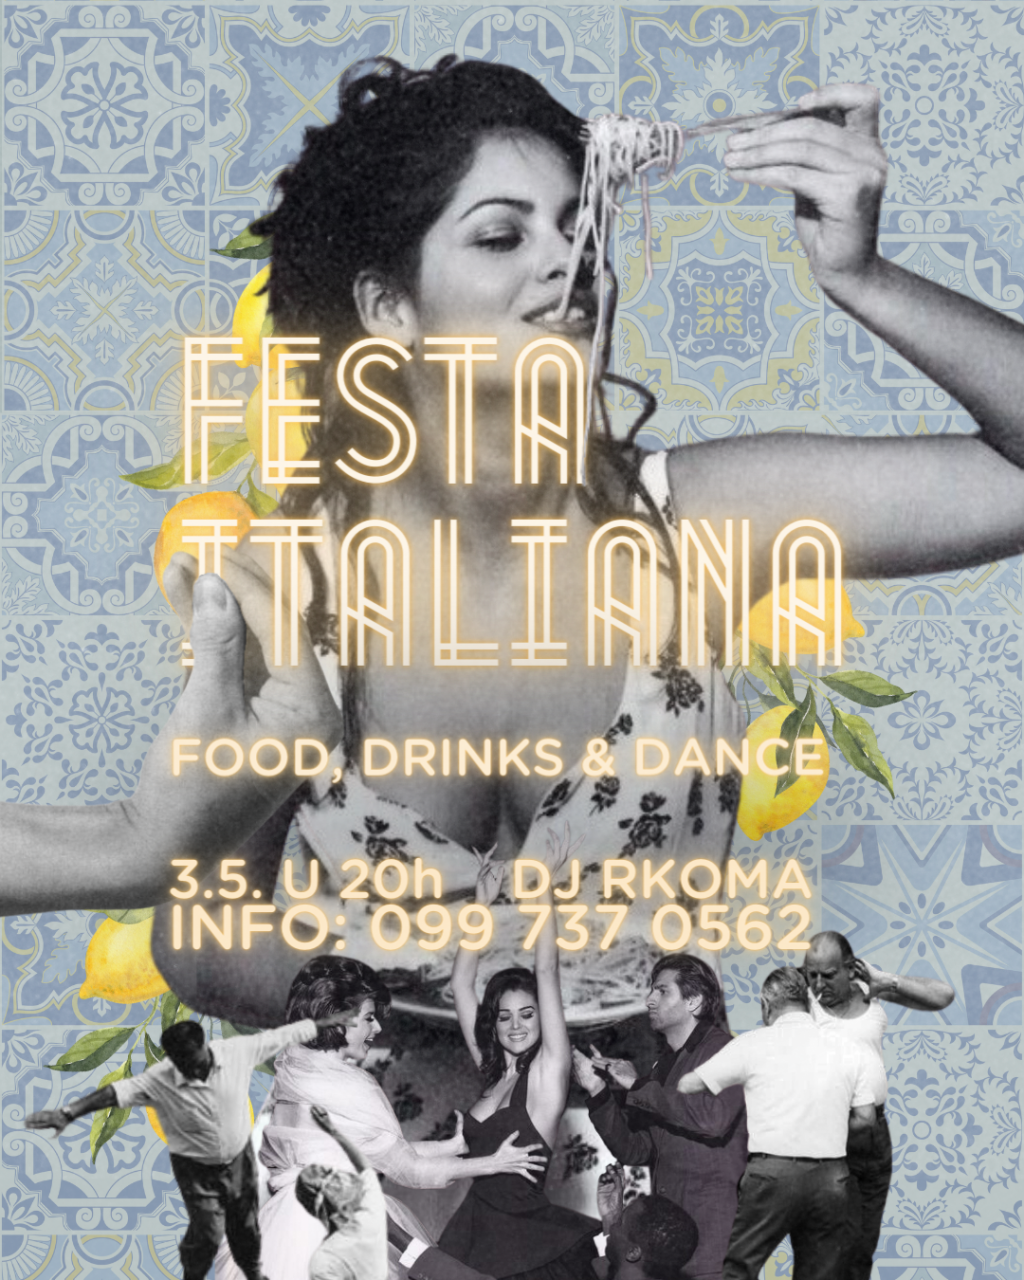 &lt;p&gt;Festa Italiana u restoranu A‘mare&lt;/p&gt;